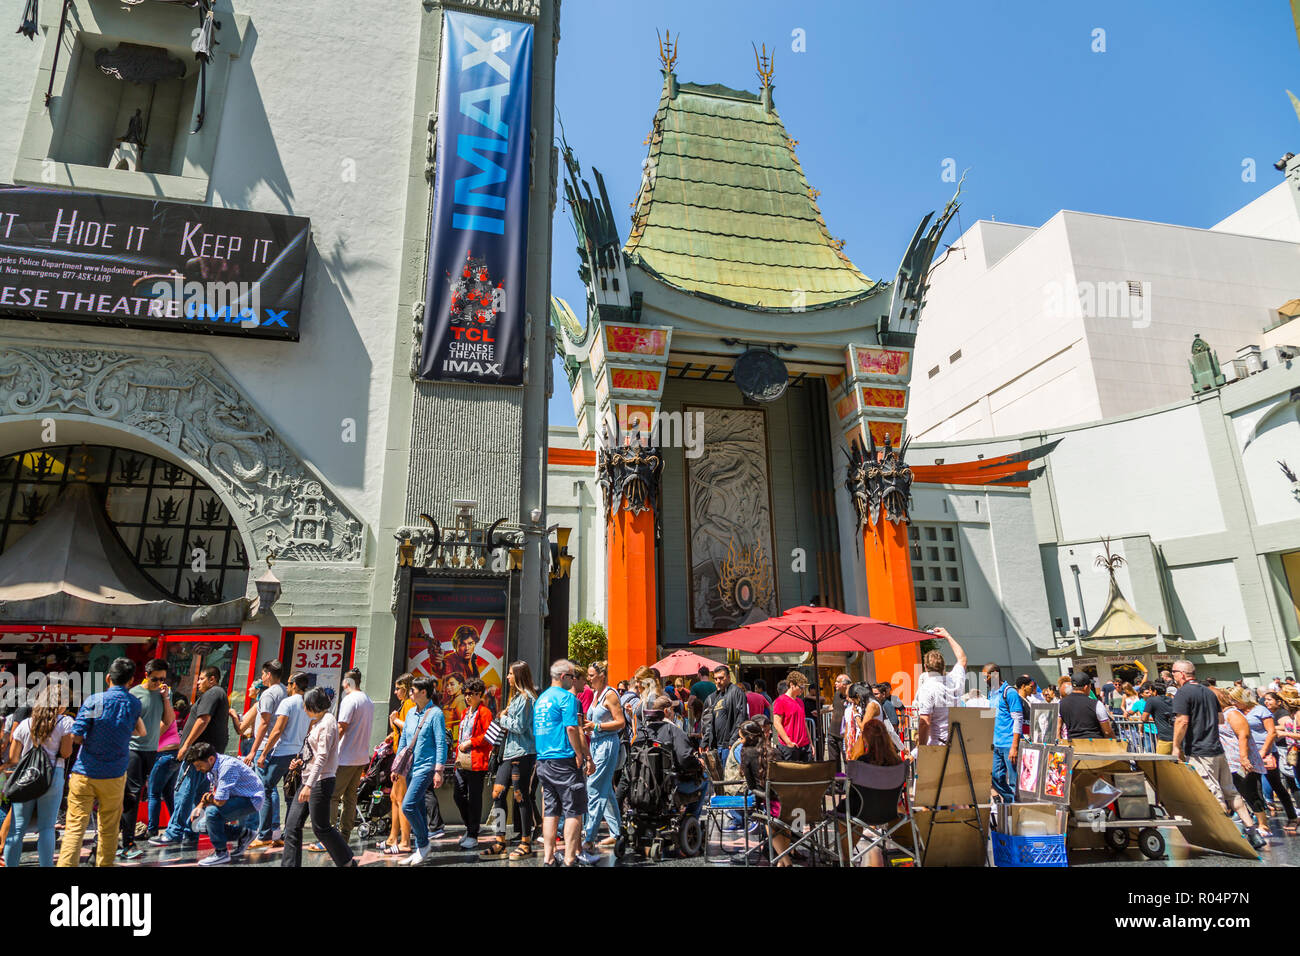 Avis de Grauman's Chinese Theatre sur Hollywood Boulevard, Hollywood, Los Angeles, Californie, États-Unis d'Amérique, Amérique du Nord Banque D'Images